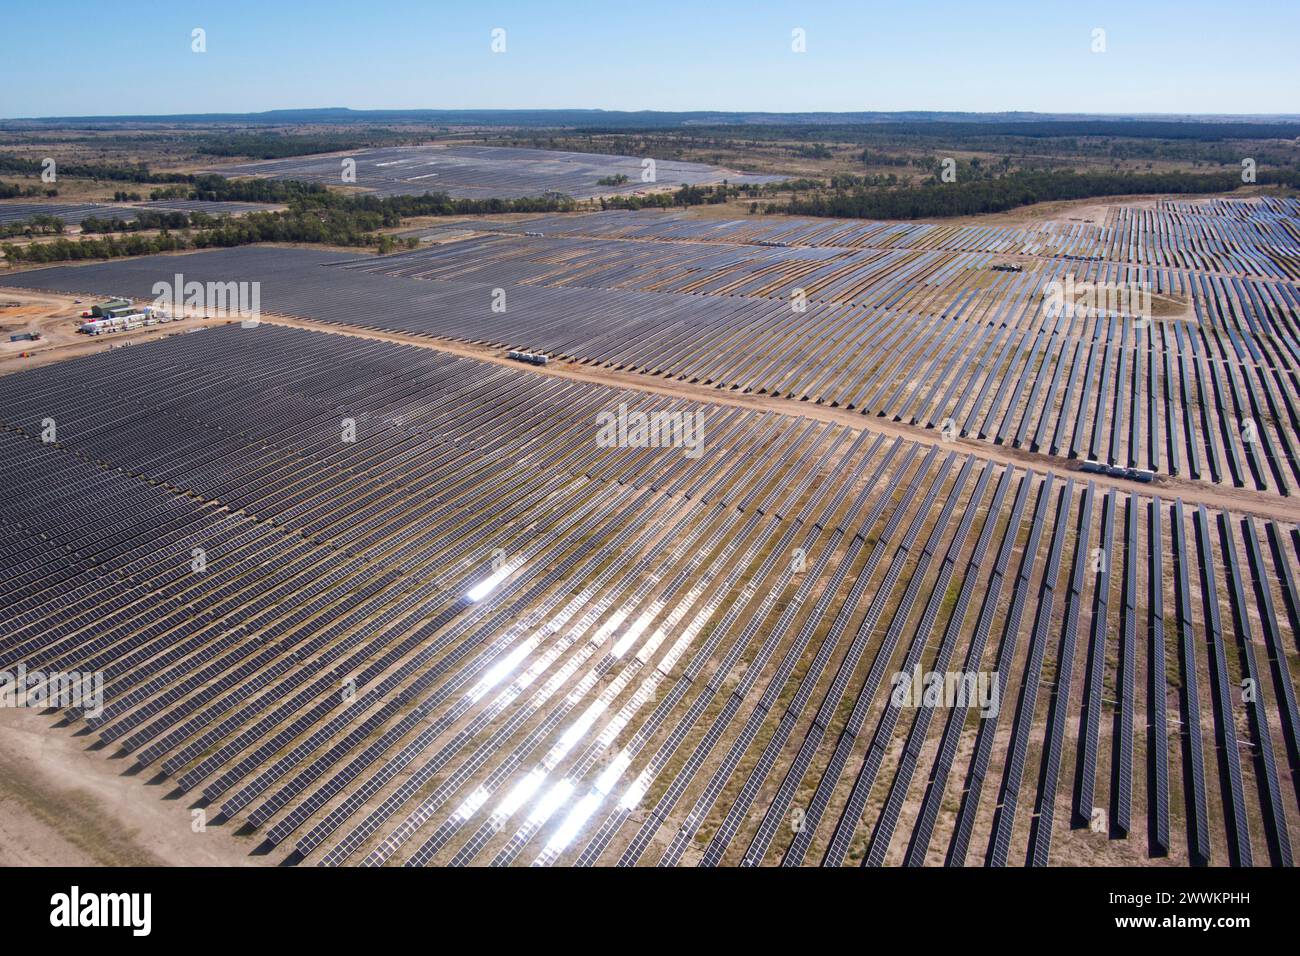 Antenne de ferme solaire couvrant plus de 500 hectares à Wandoan South Queensland Australie Banque D'Images